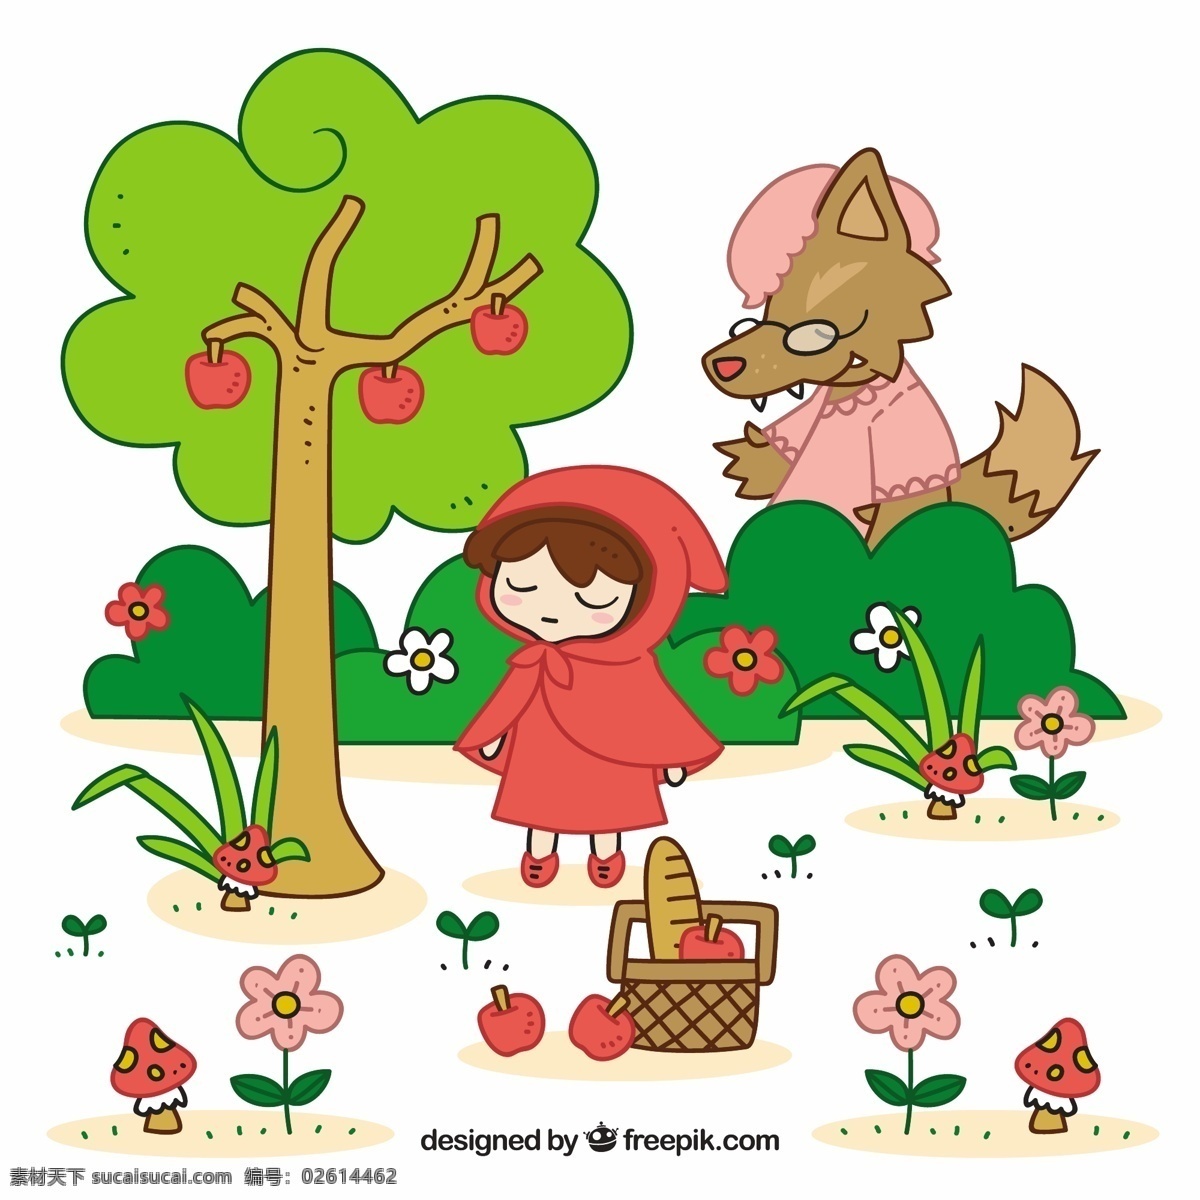 可爱 小红帽 狼 树 儿童 卡通 红 苹果 性质 森林 可爱的 面包 创意 童话 篮 人物 蘑菇 幻想 奶奶 故事